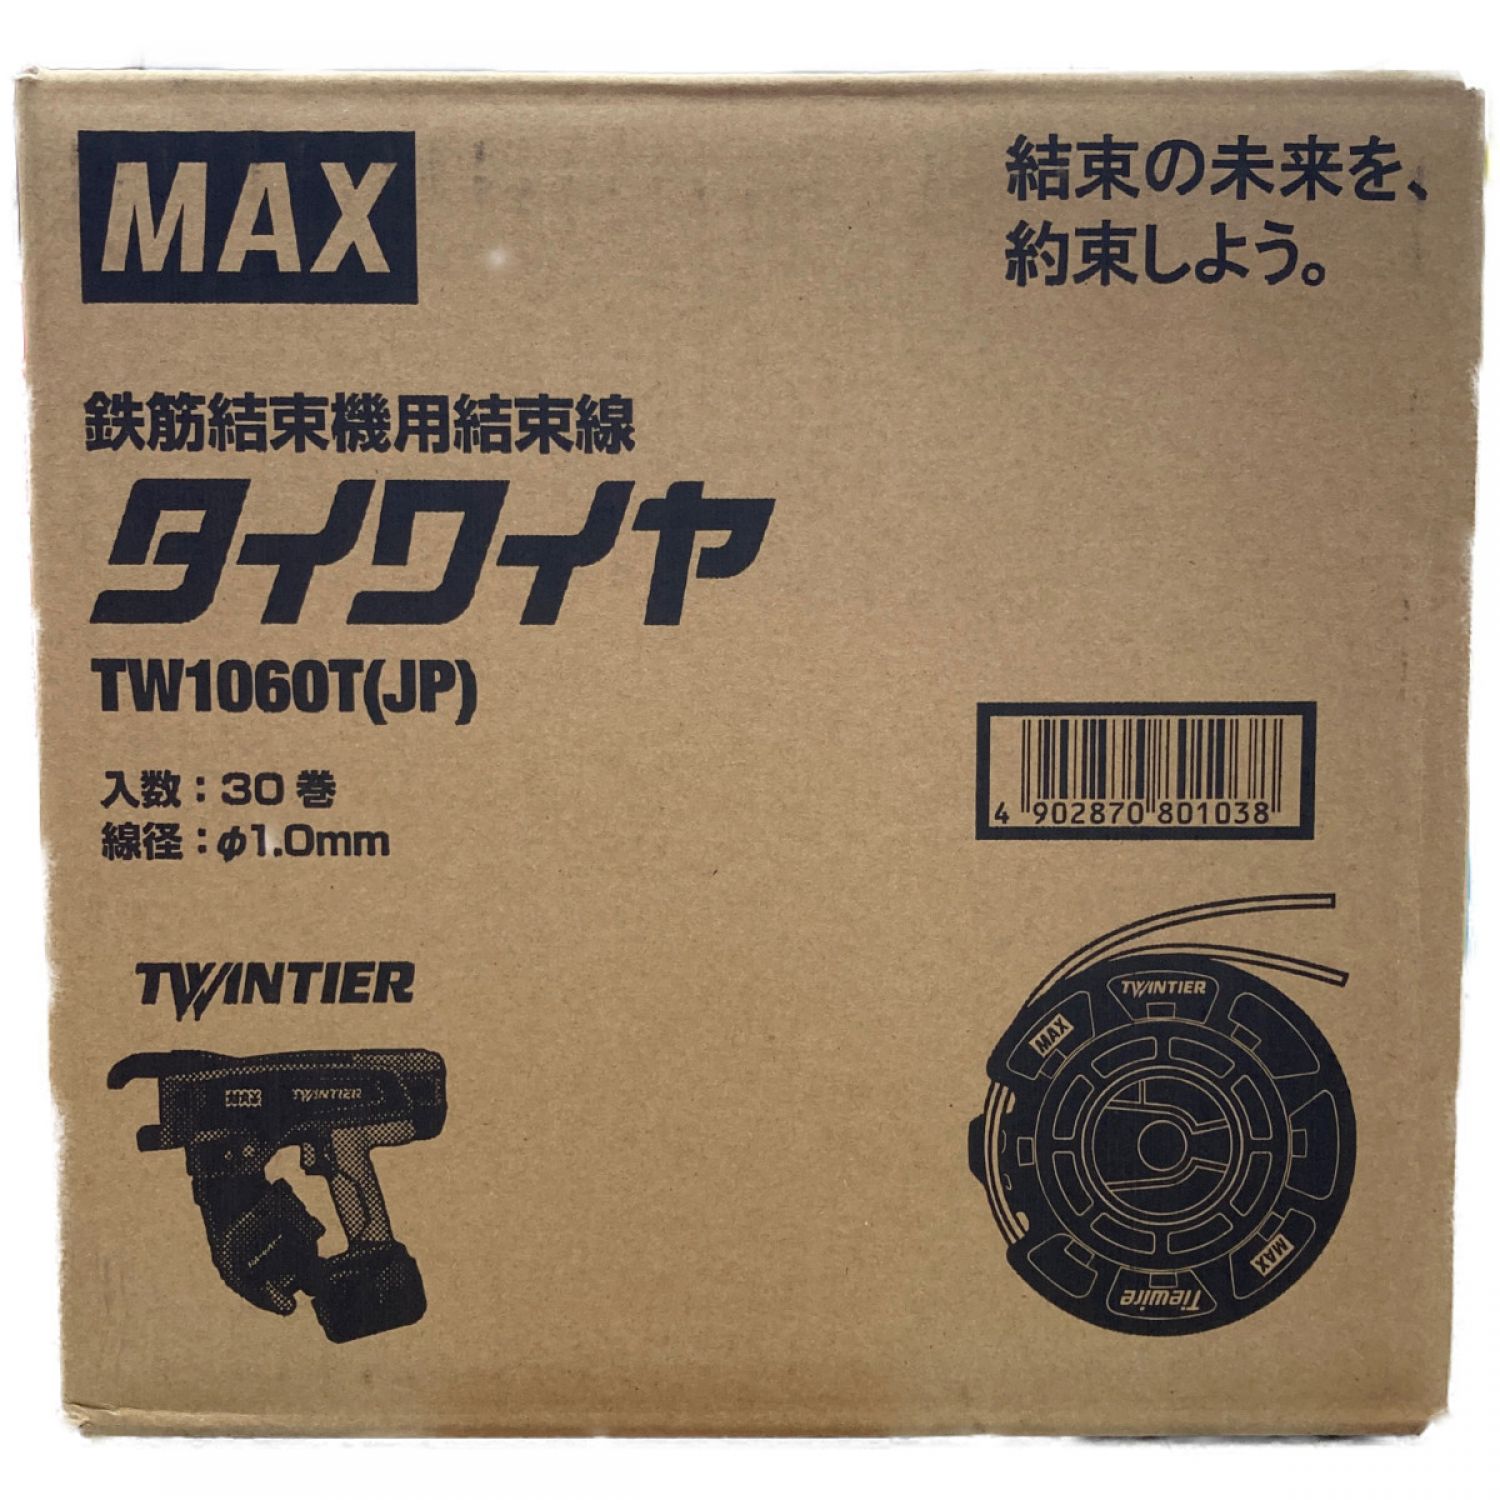 MAX マックス タイワイヤ TW1060T Sランク